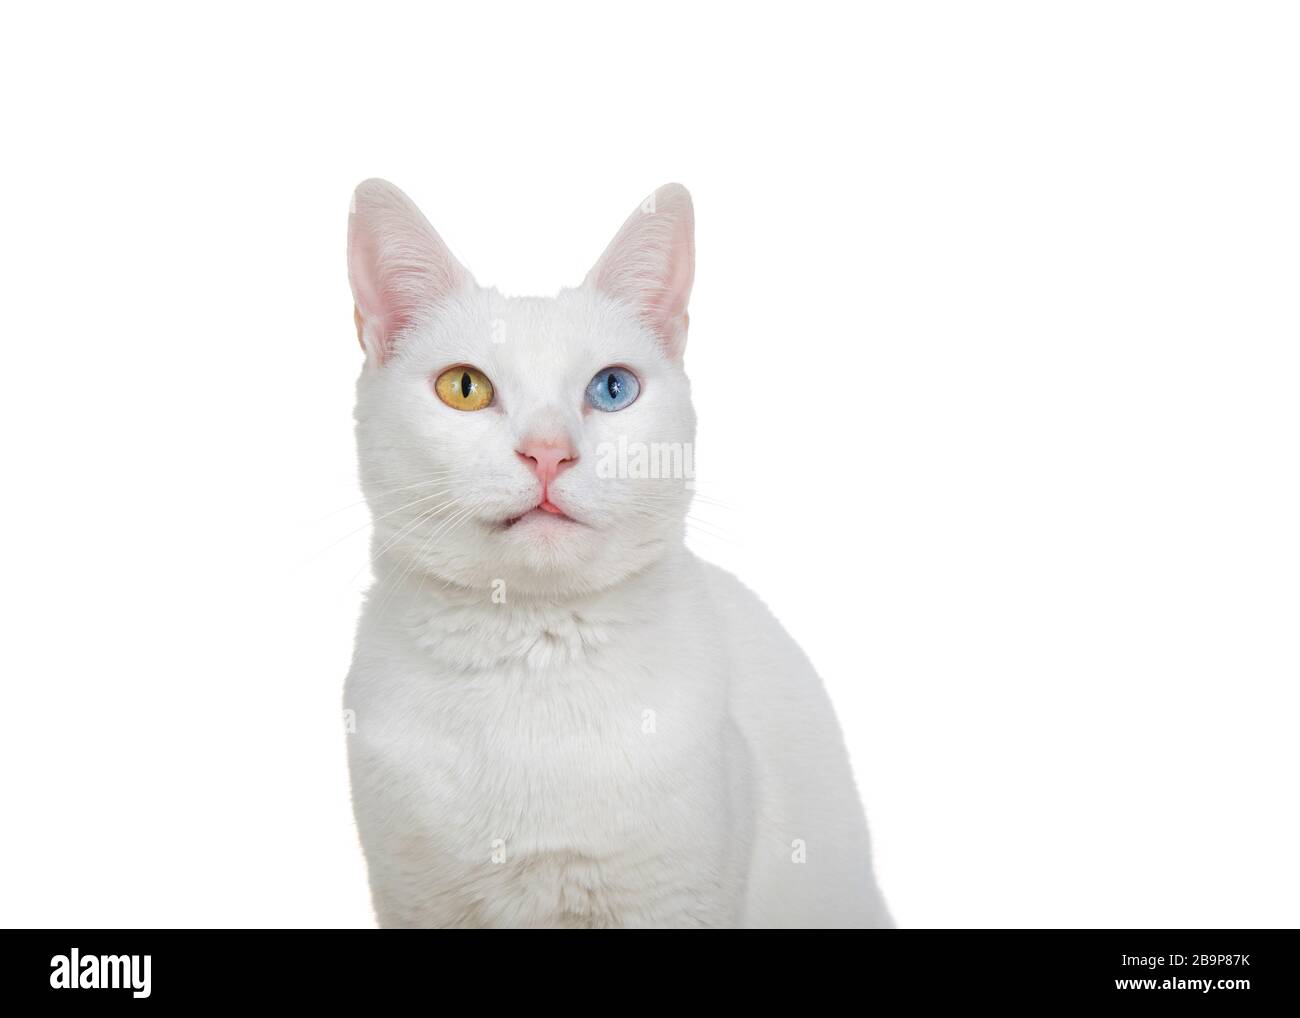 Gros plan portrait d'un chat blanc avec hétérochromie, yeux impairs, regardant jusqu'aux spectateurs avec l'expression curieuse, pointe de langue s'enfermer. Isolé Banque D'Images